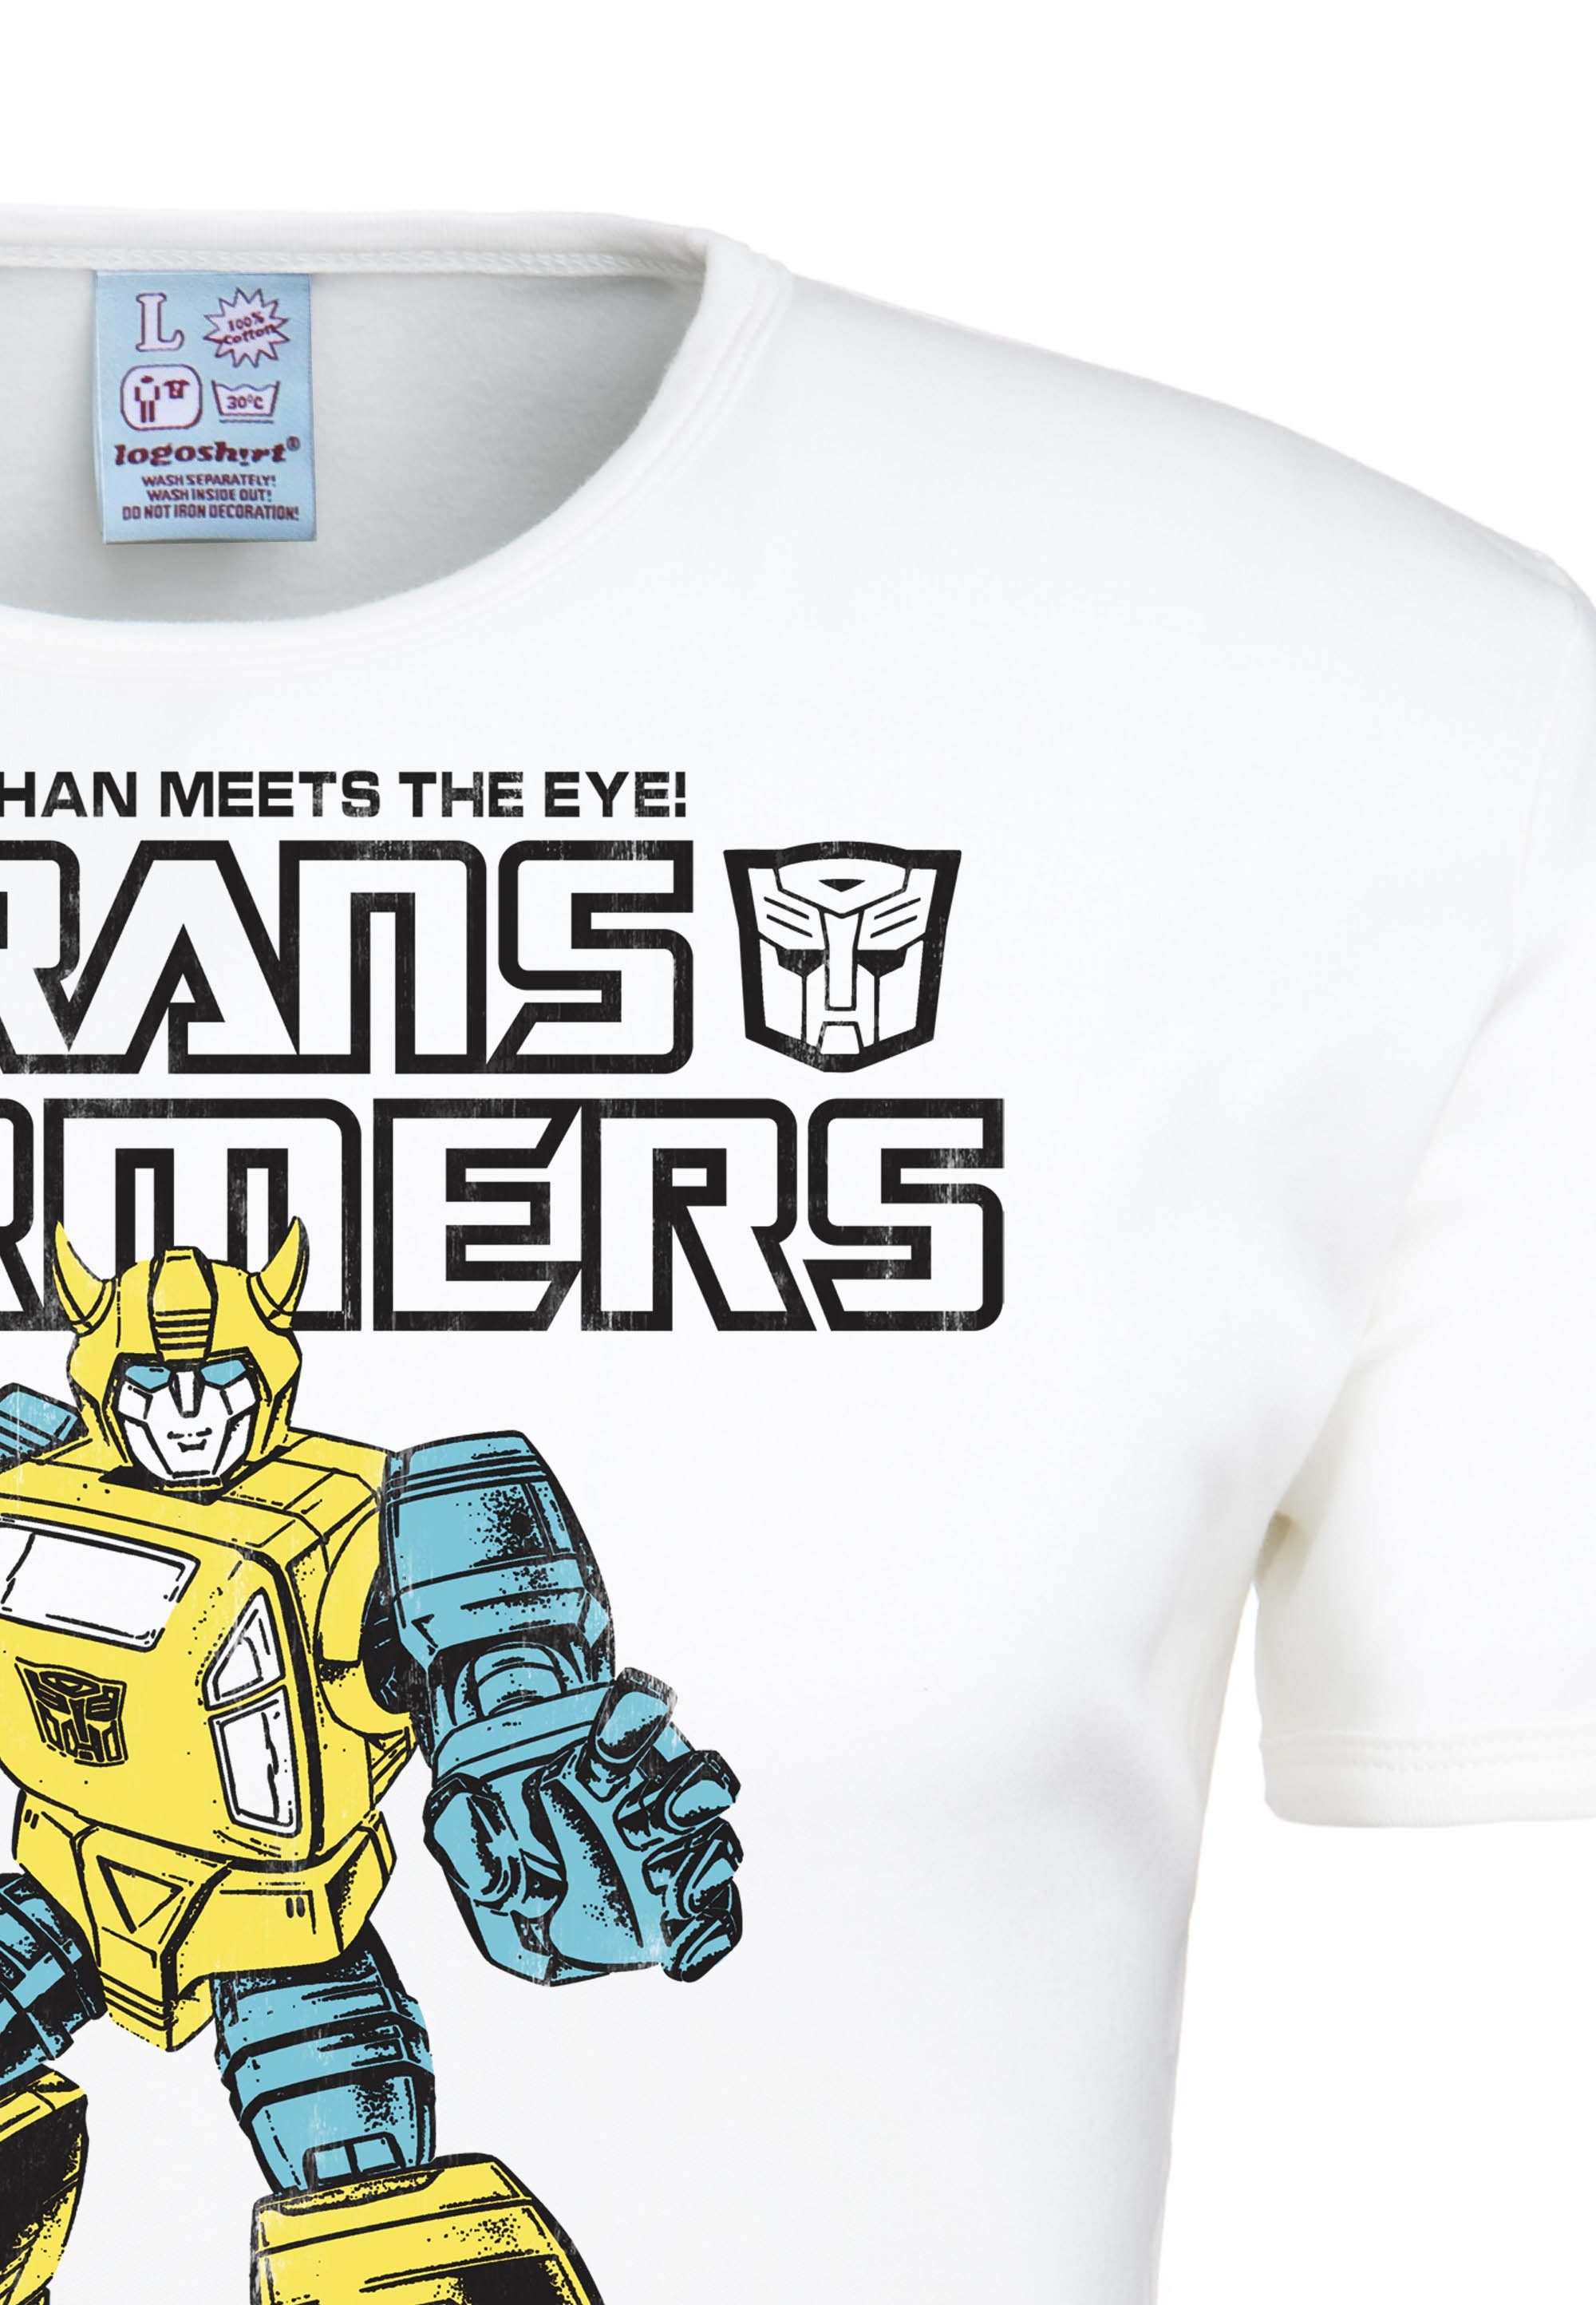 großflächigem LOGOSHIRT Bumblebee T-Shirt Autobots Frontprint mit